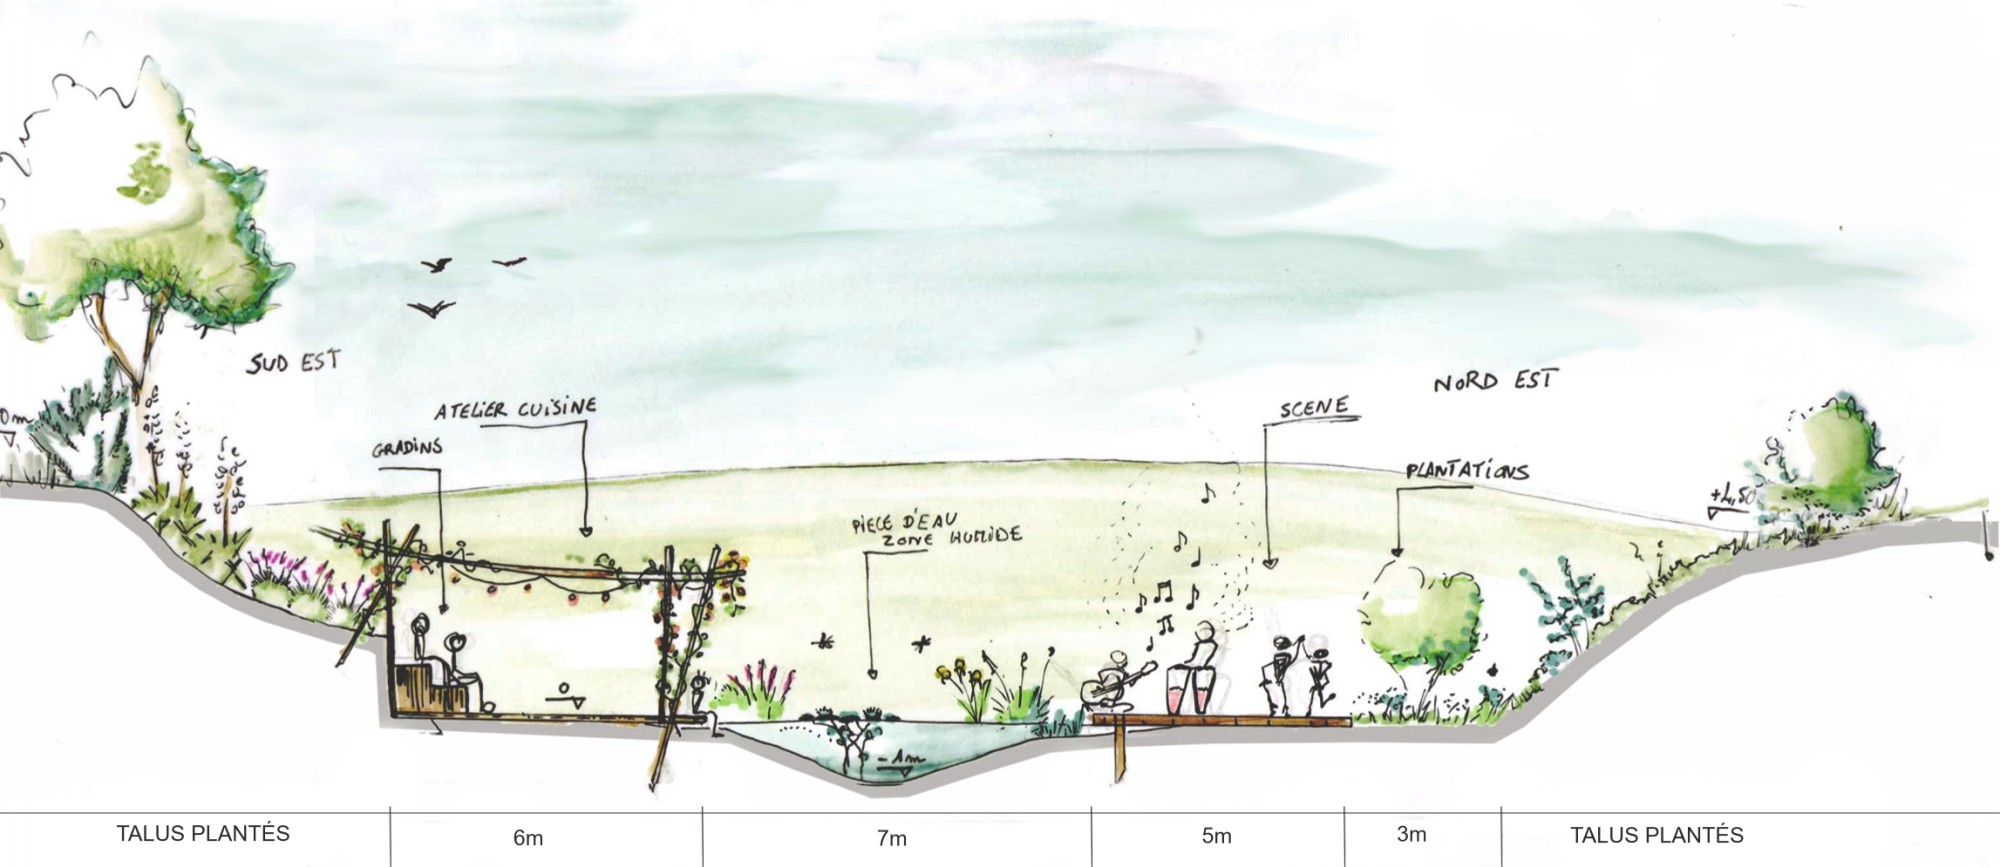 Aveyron - Michael   FAYRET  souhaite transformer une retenue d'eau asséchée en un amphytheatre vegetal a 360°